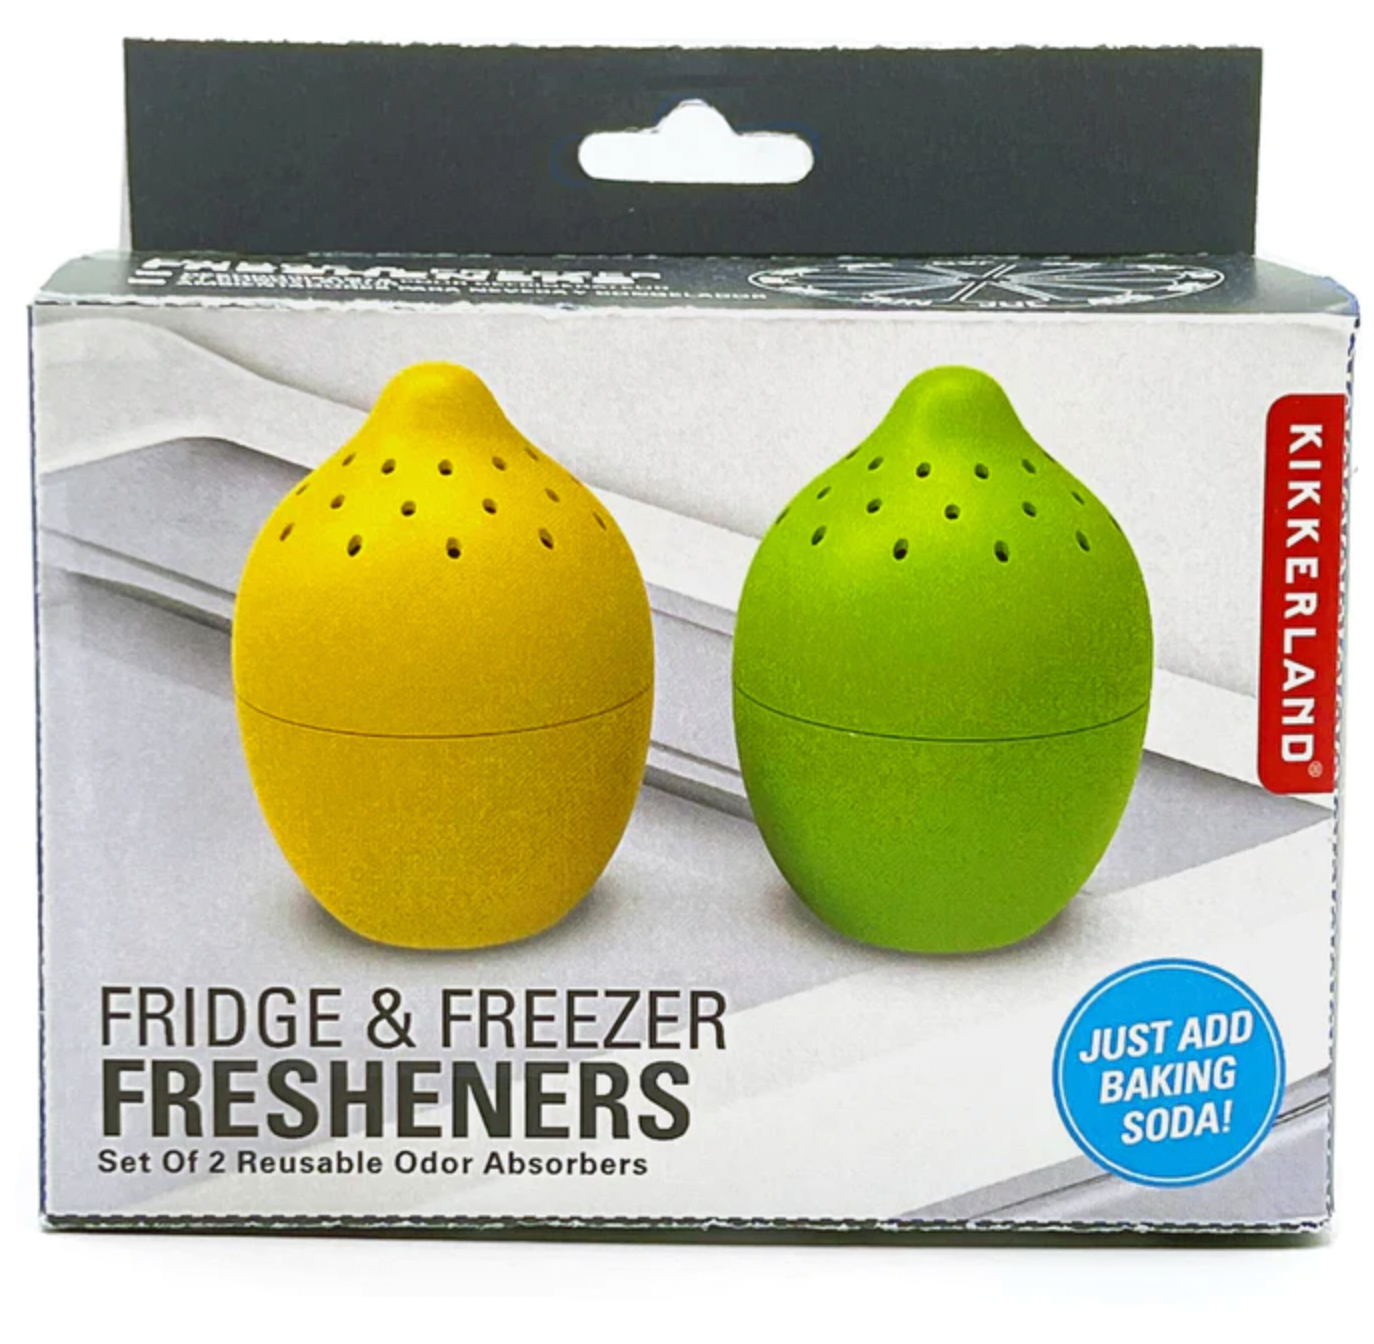 Fridge and Freezer Fresheners